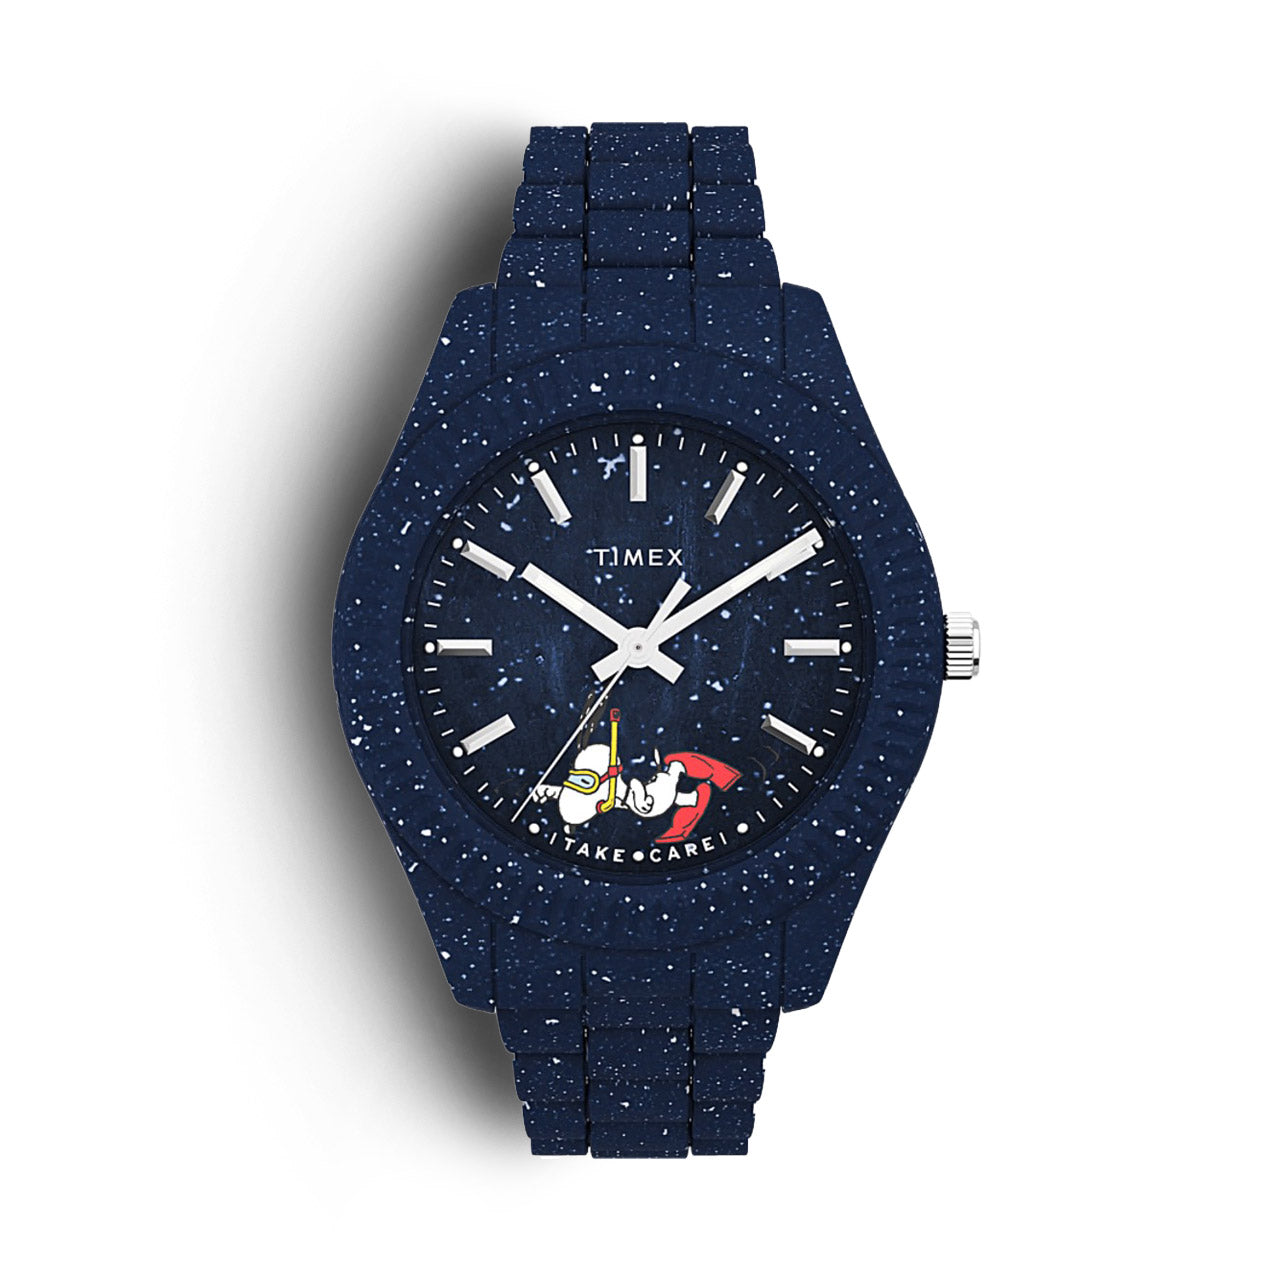 Timex Waterbury x Peanuts Ocean Plastic Watch, #Timex #Waterbury #Peanuts #Ocean #Plastic #Watch